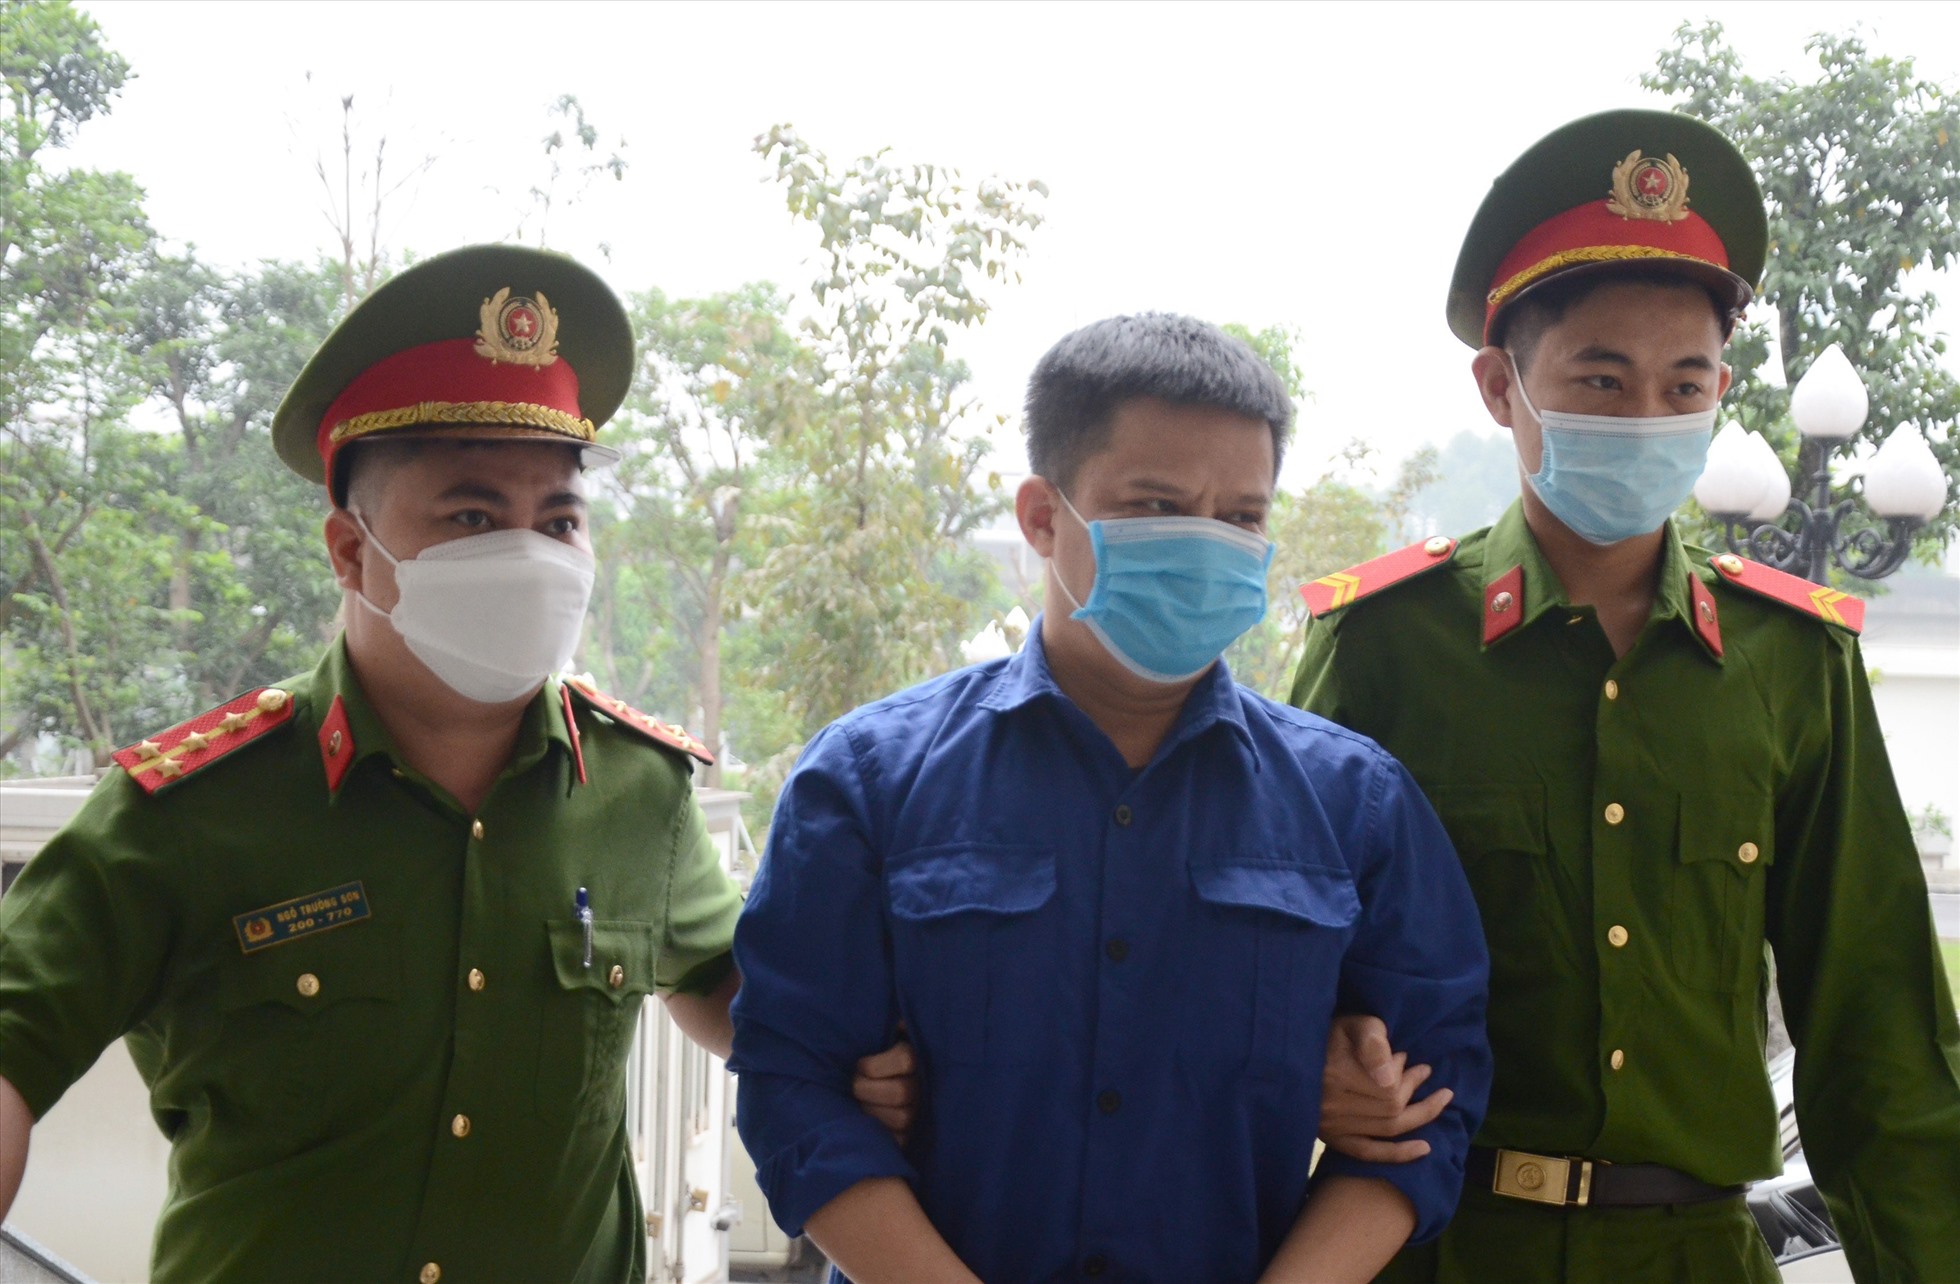 Ông Nguyễn Đức Đảng sau khi được tạo điều kiện đã biếu ông Nguyễn Quang Tuấn 10.000 USD cảm ơn vào dịp Tết nguyên đán. Ảnh: Việt Dũng